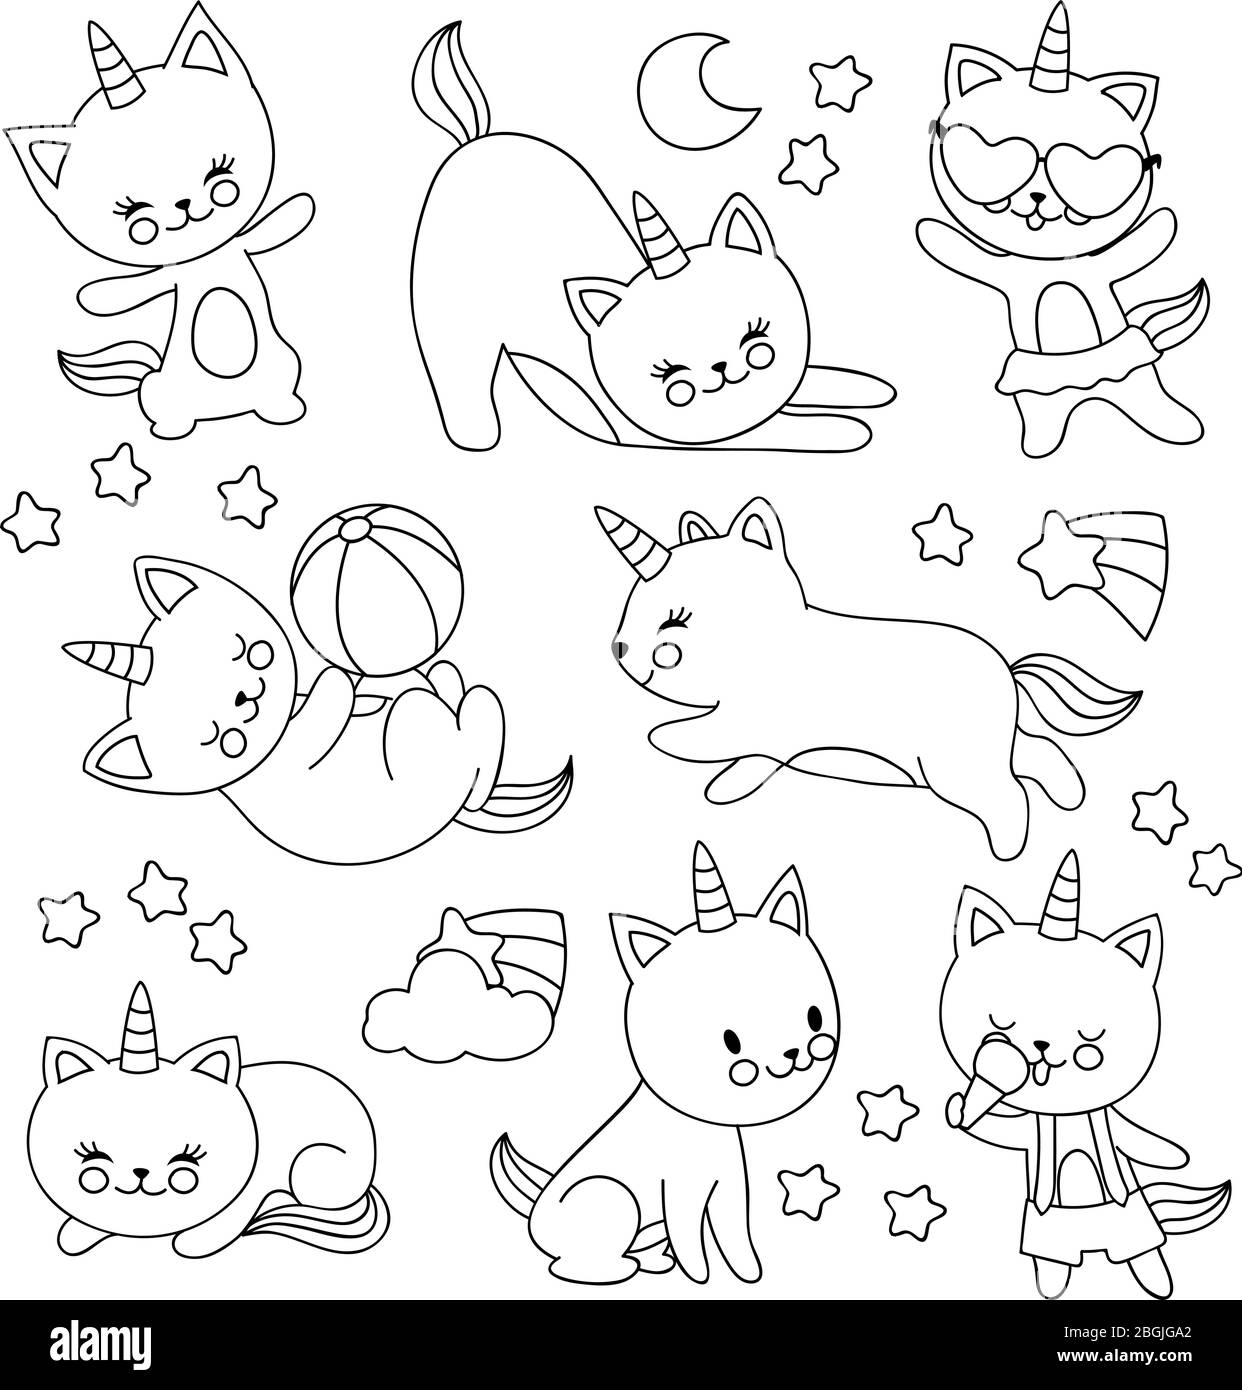 Handgezeichnete niedliche fliegende Einhorn Katzen. Vektor Cartoon Zeichen für Kinder zum ausmalen Buch. Katze Einhorn Zeichnung, Haustier mit Horn lineare Abbildung Stock Vektor